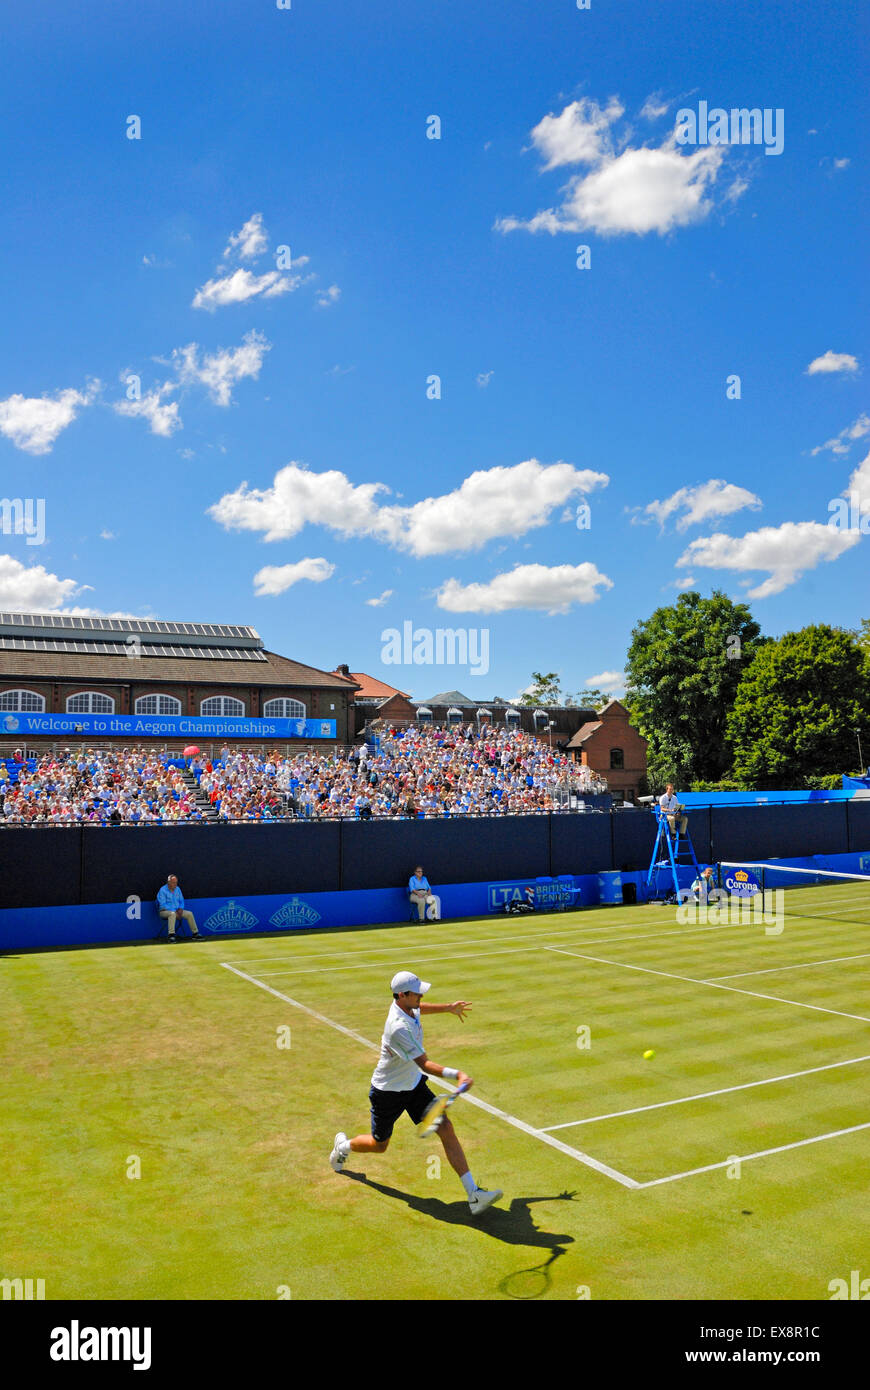 Aegon campeonatos de tenis, Club de Queens, Londres, Junio10th 2014. Corte 2 Foto de stock